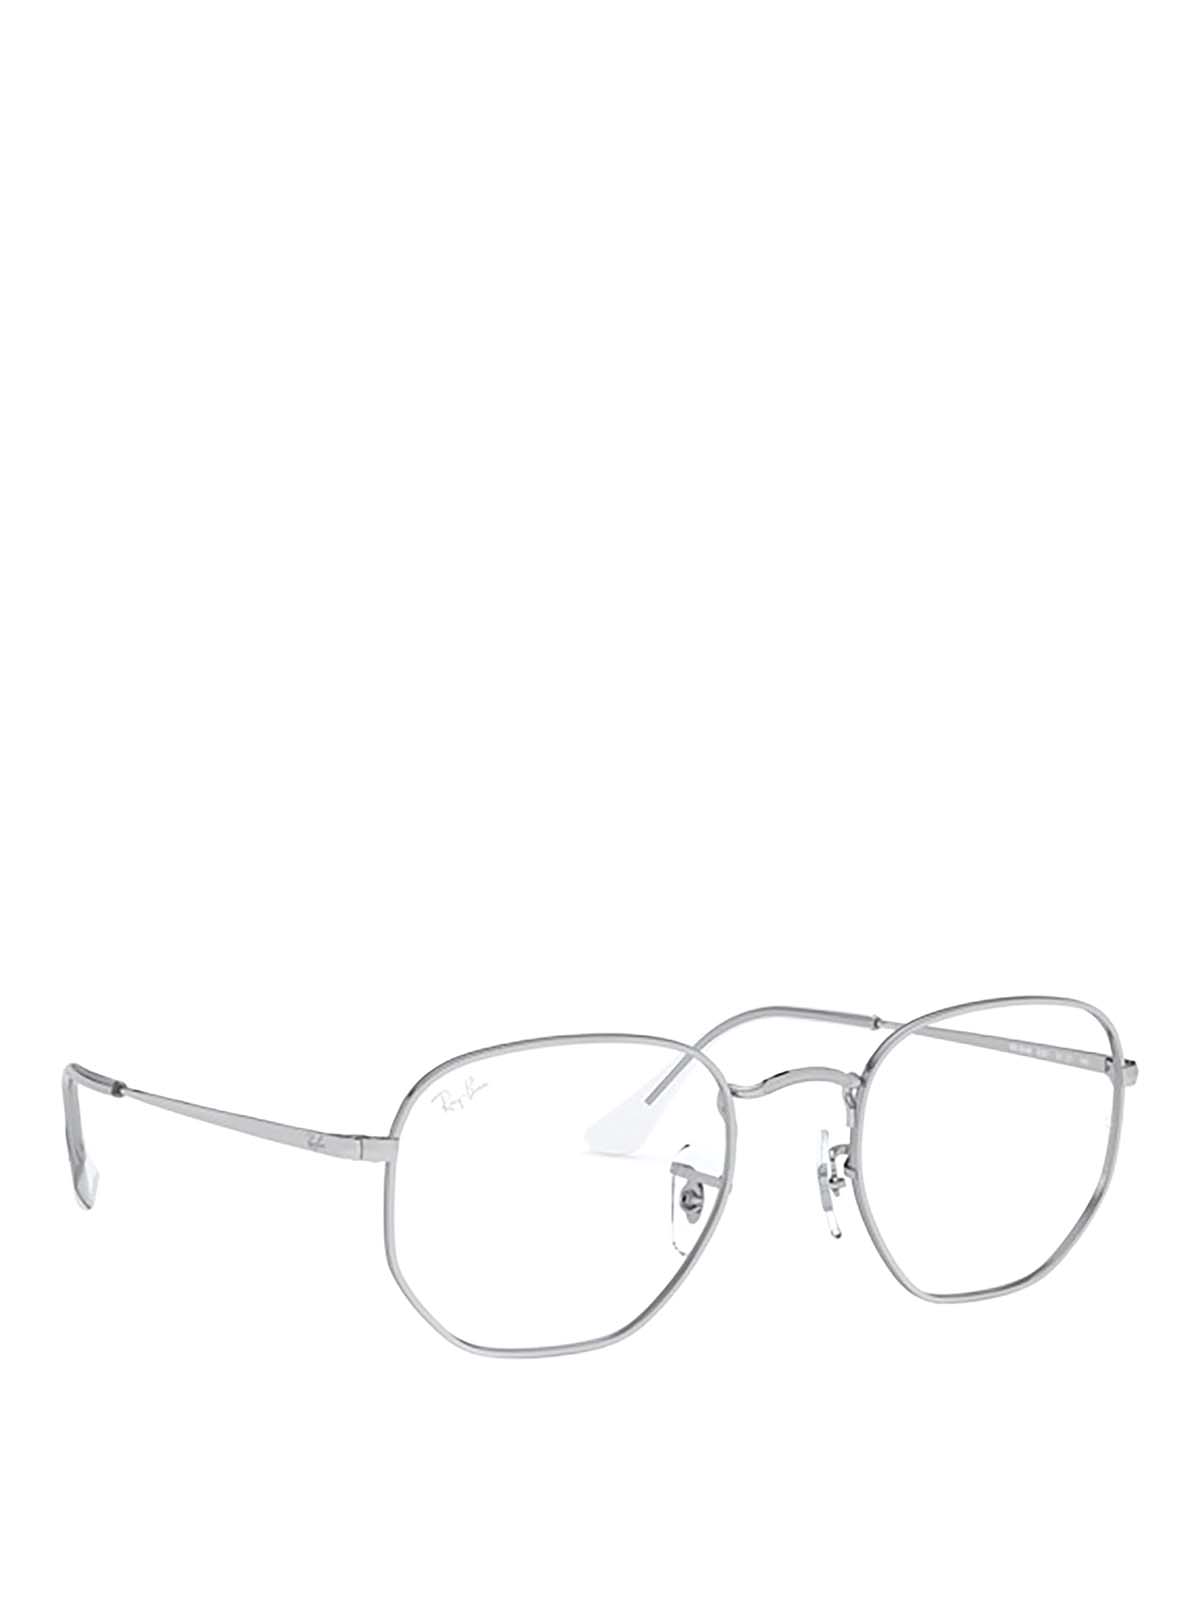 Ray Ban Hexagonal Silver Eyeglasses Glasses Rx64482501